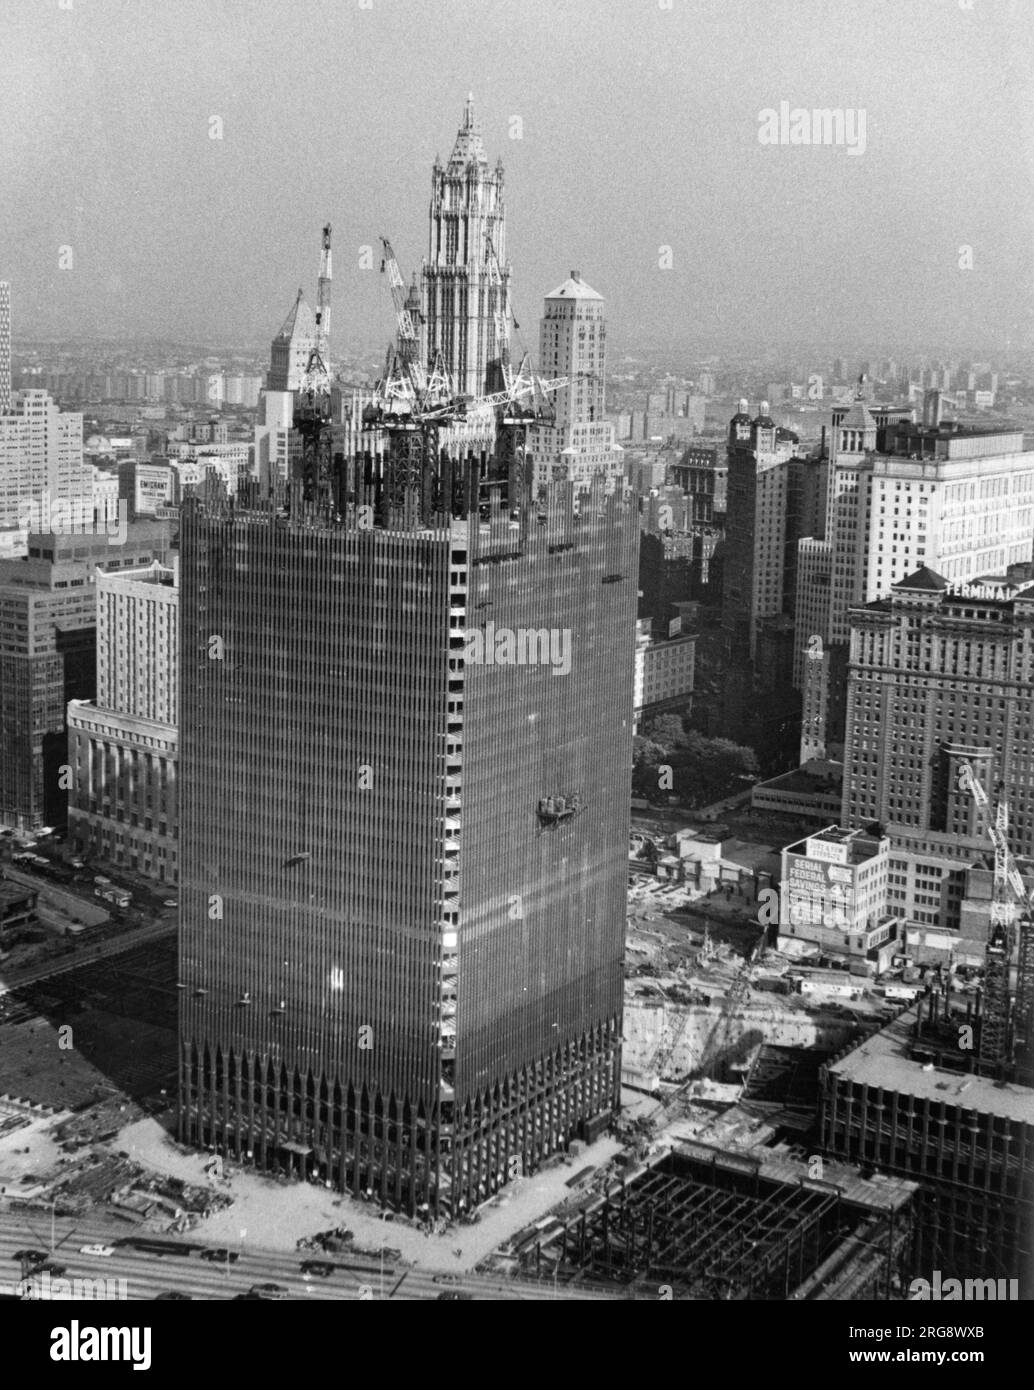 La construction de la première des tours jumelles du World Trade Center, qui a pris 7 ans à construire et a été détruite par des terroristes le 11 septembre 2001. Banque D'Images